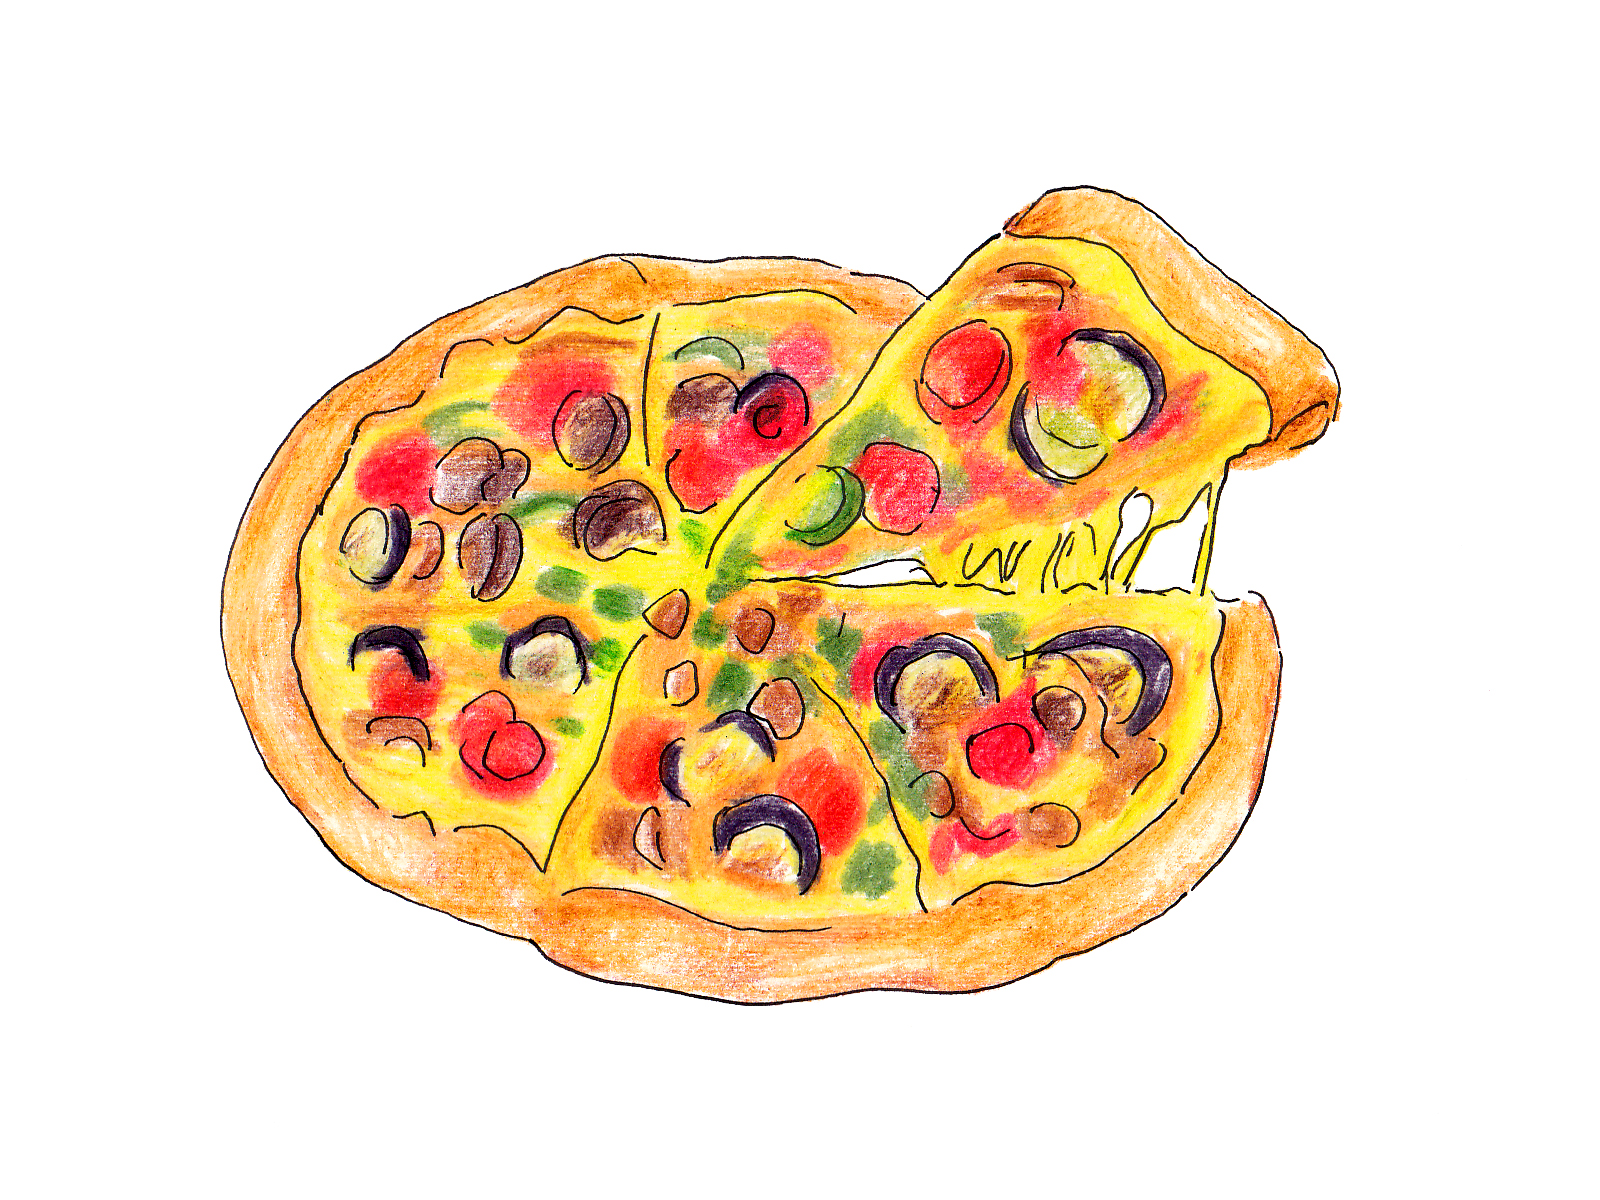 ガスト 牛カルビ焼きピザ がテイクアウト限定価格に 5月5日まで 滋賀のママがイベント 育児 遊び 学びを発信 シガマンマ ピースマム